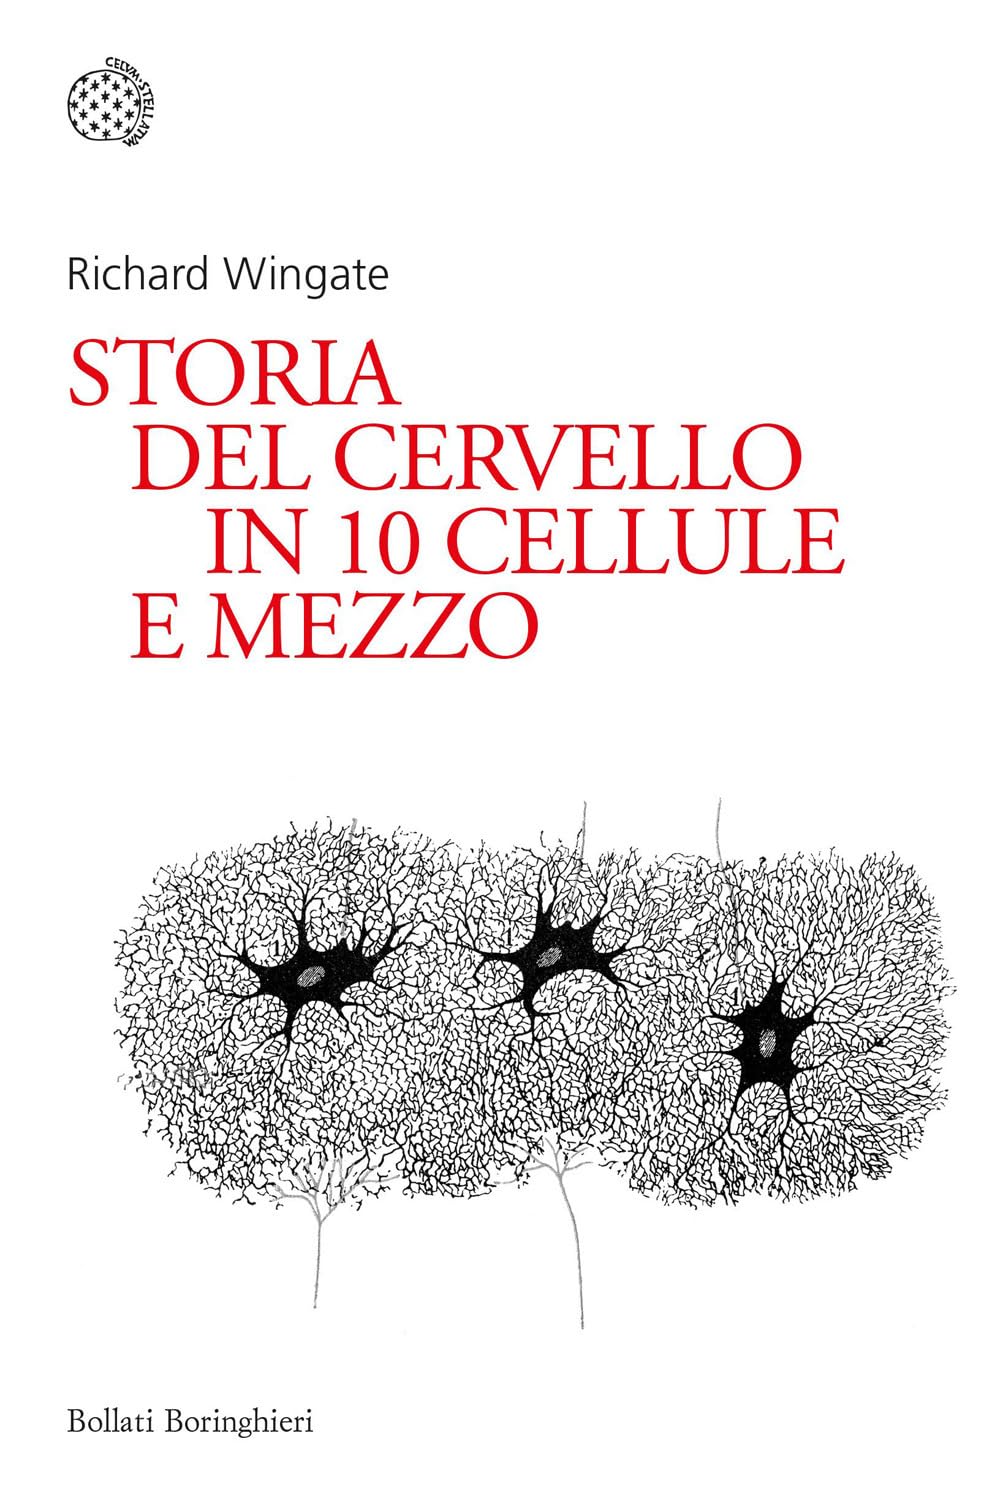 Richard Wingate: Storia del cervello in 10 cellule e mezzo (Italiano language, Bollati Boringhieri)